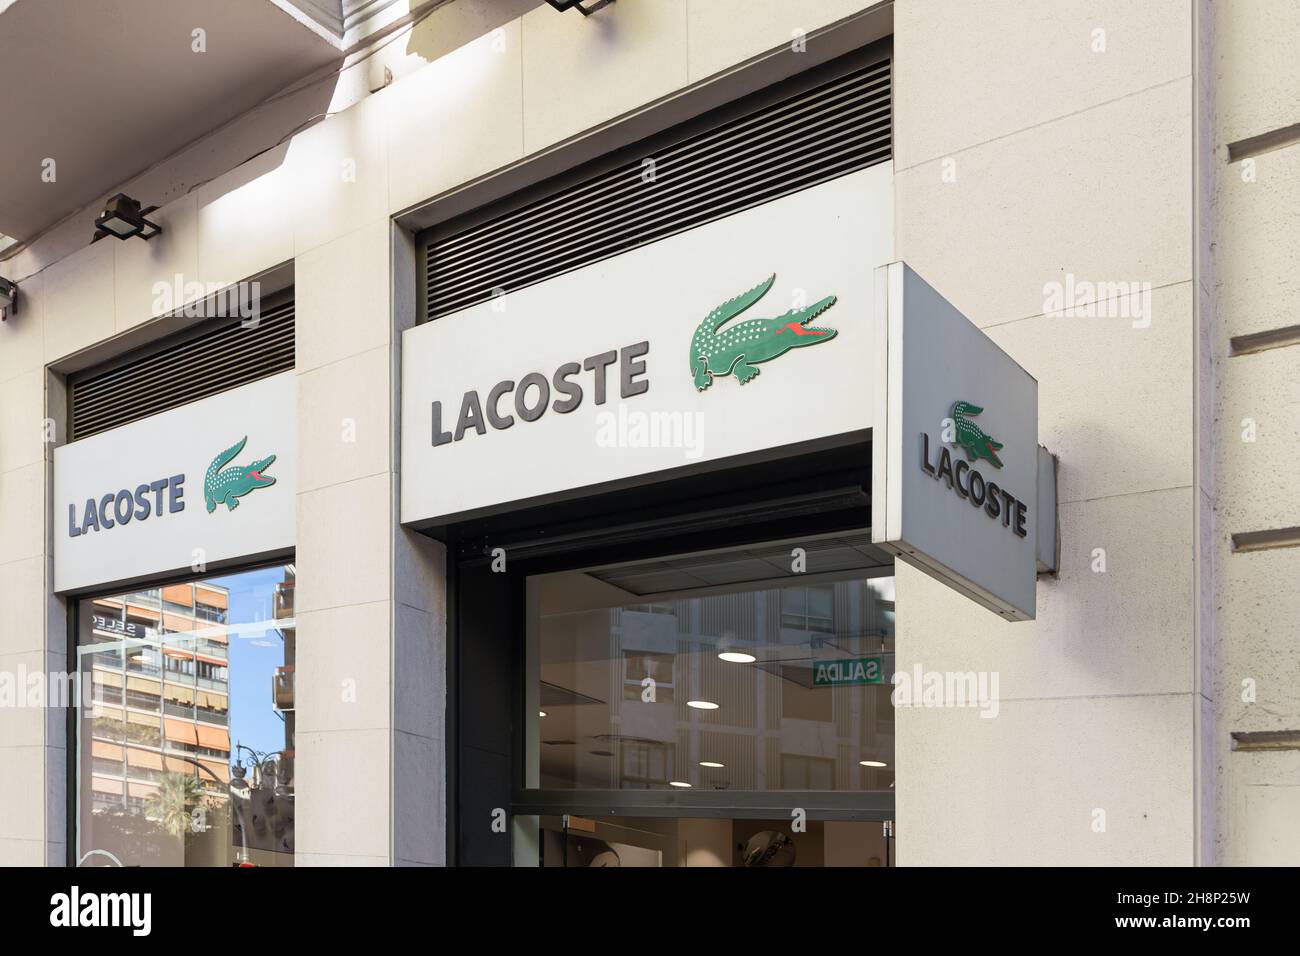 VALENCIA, SPANIEN - 01. DEZEMBER 2021: Lacoste ist ein französisches Bekleidungsunternehmen, das hochwertige Kleidung und Accessoires verkauft Stockfoto